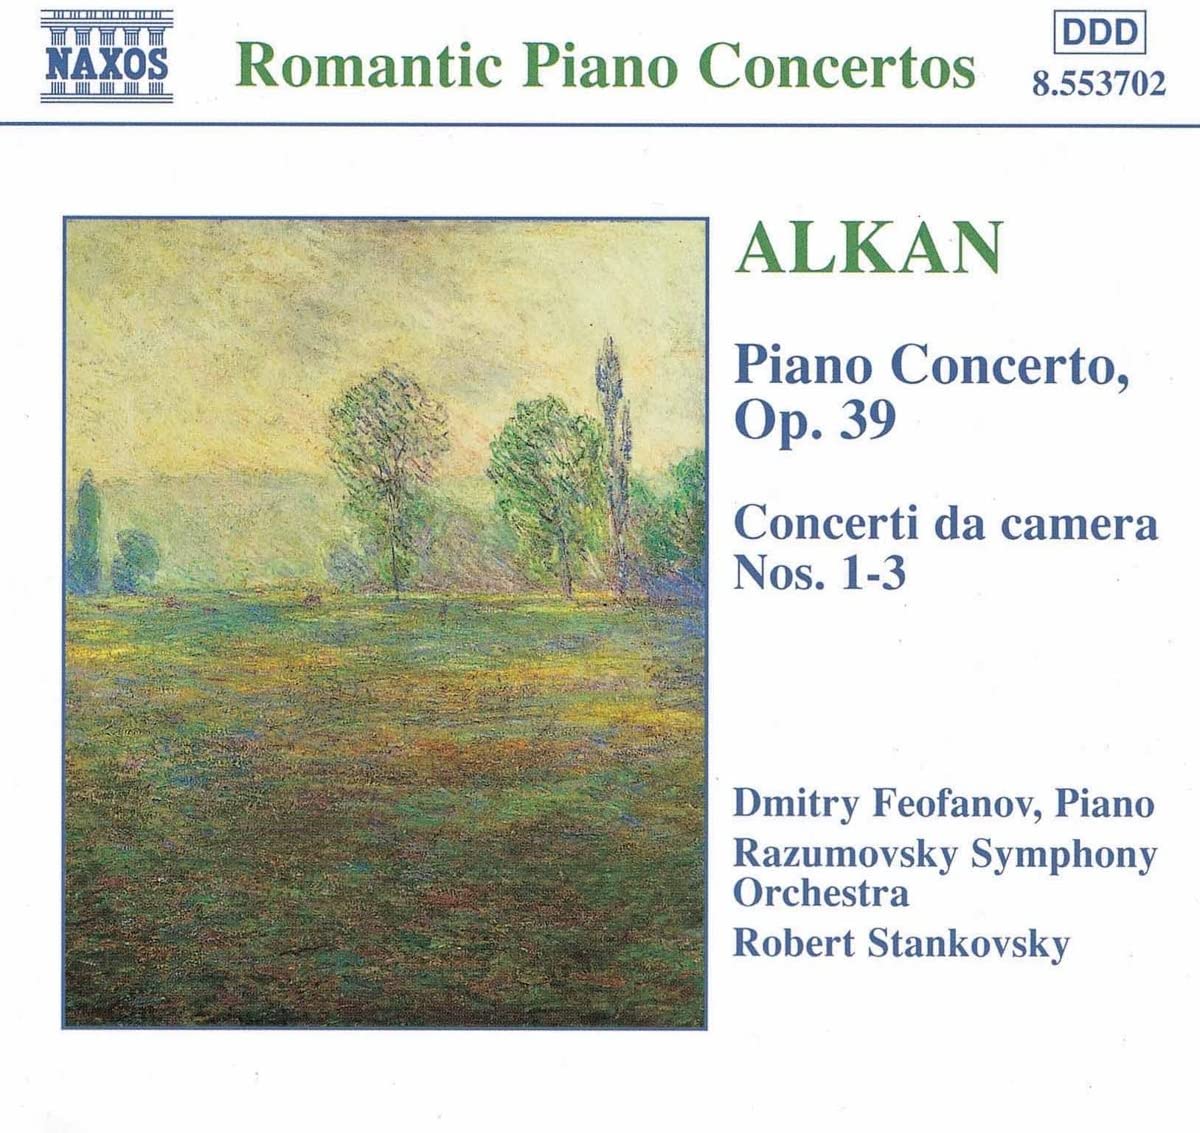 ALKAN: Piano Concerto, Op. 39, Concerto da Camera, Nos. 1-3